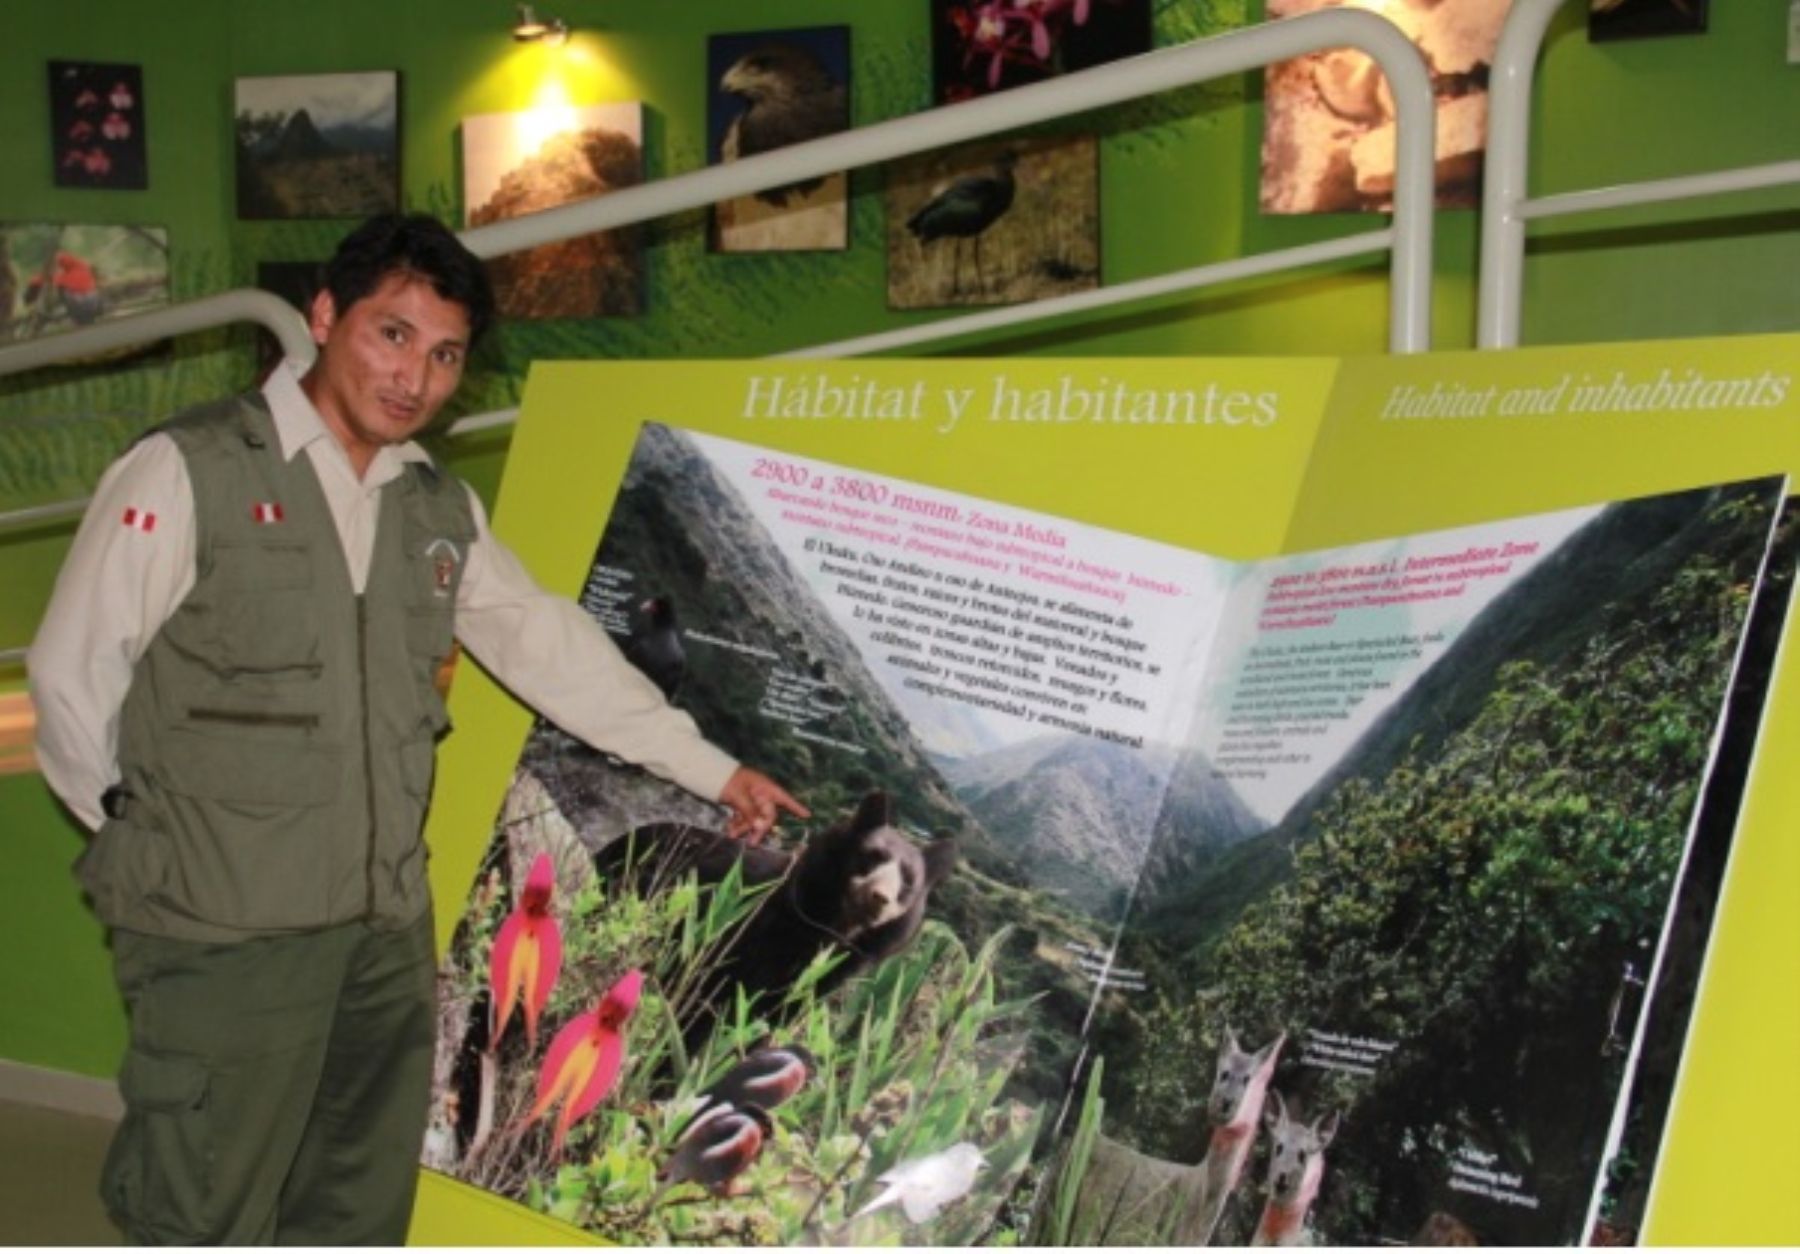 El Centro de Interpretación del Santuario Histórico de Machu Picchu se ubica en Piscacucho, distrito de Ollantaytambo, provincia de Urubamba, Cusco.